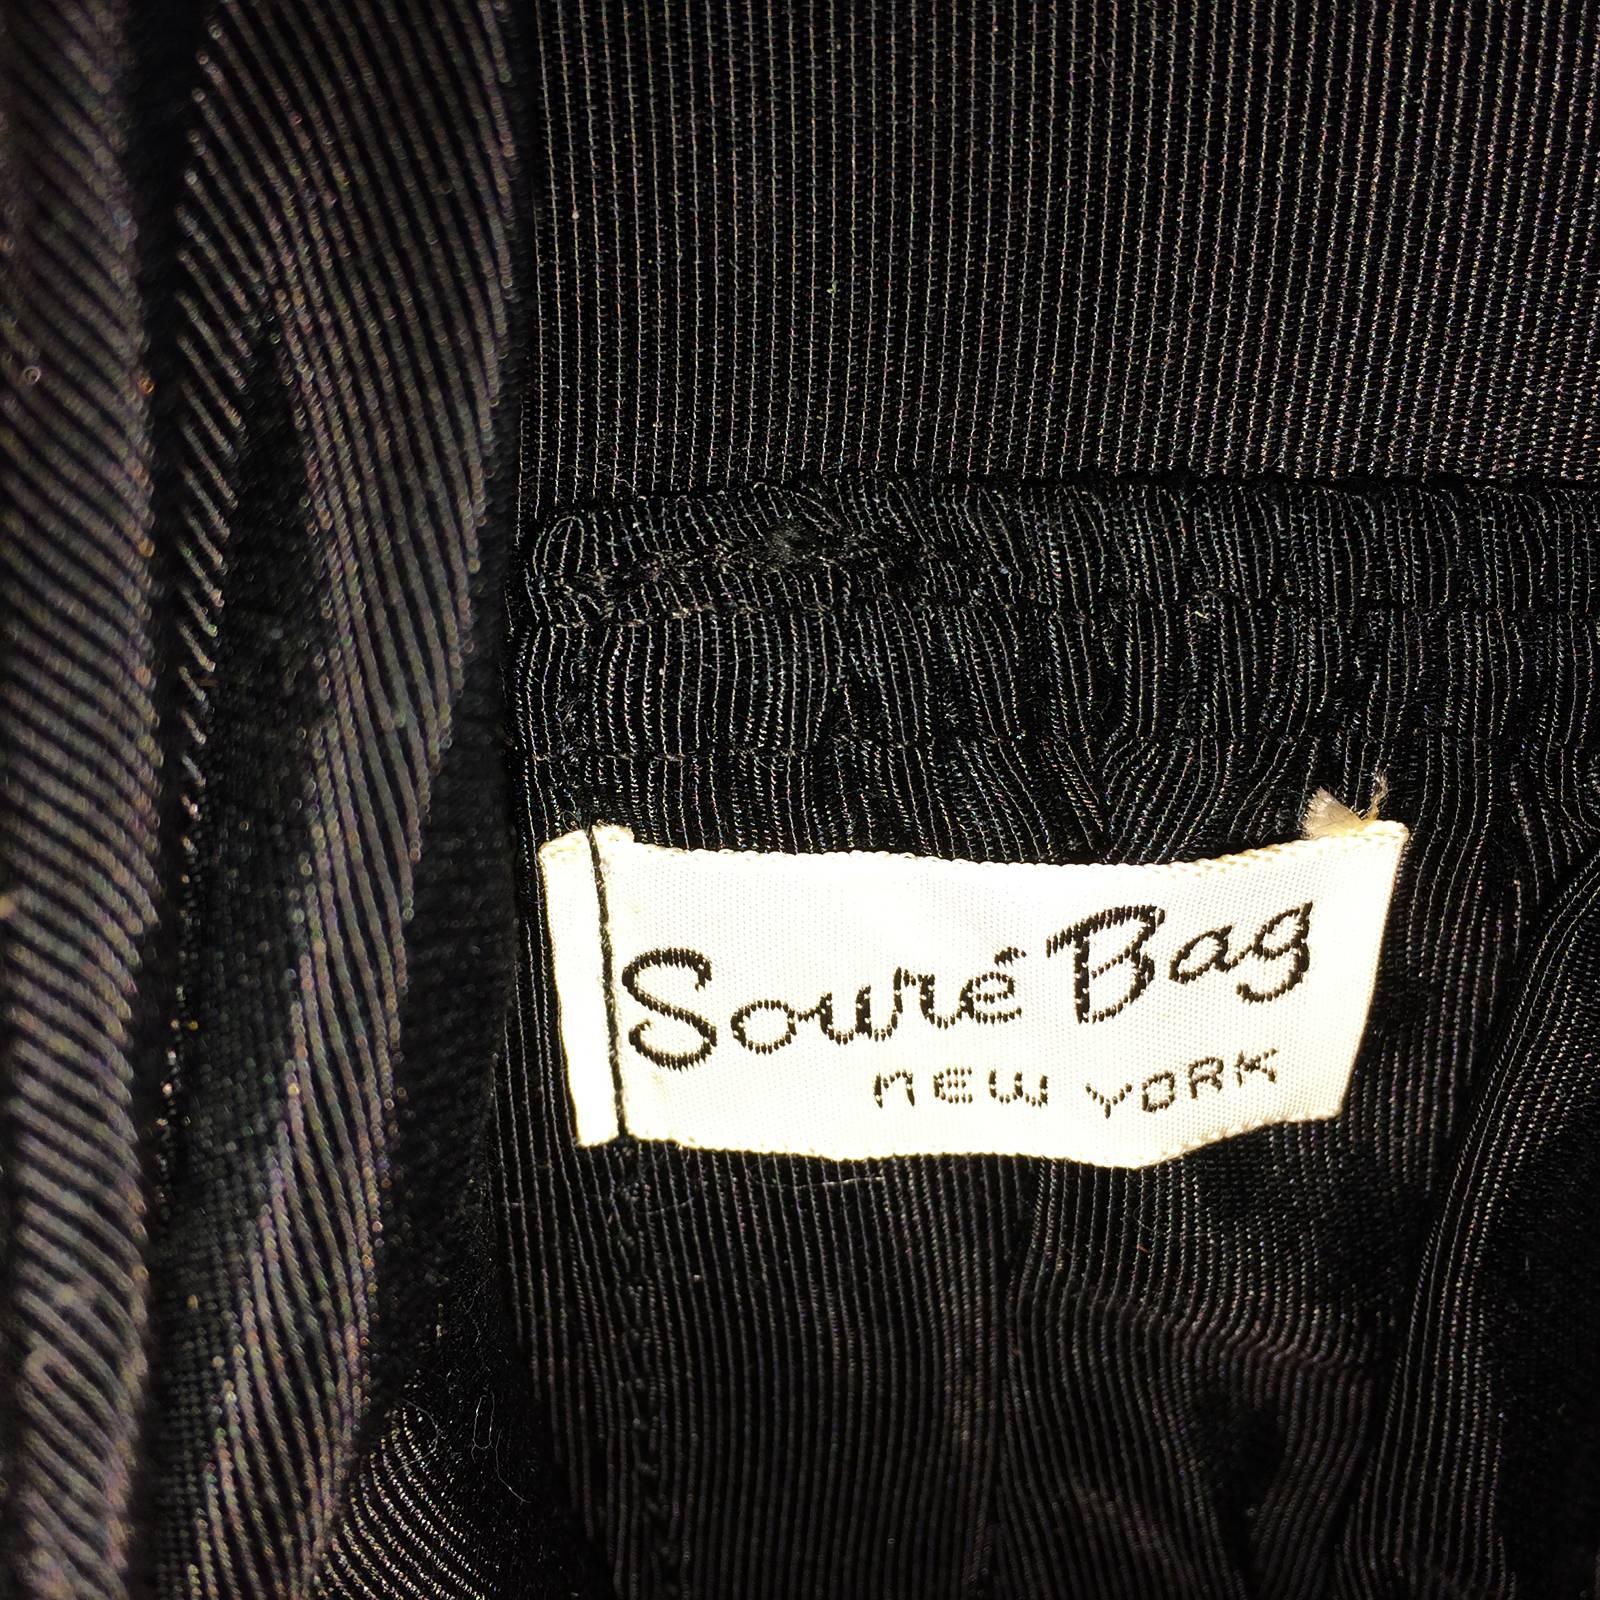 Black Rare Poodle Purse Handbag made by Soure New York